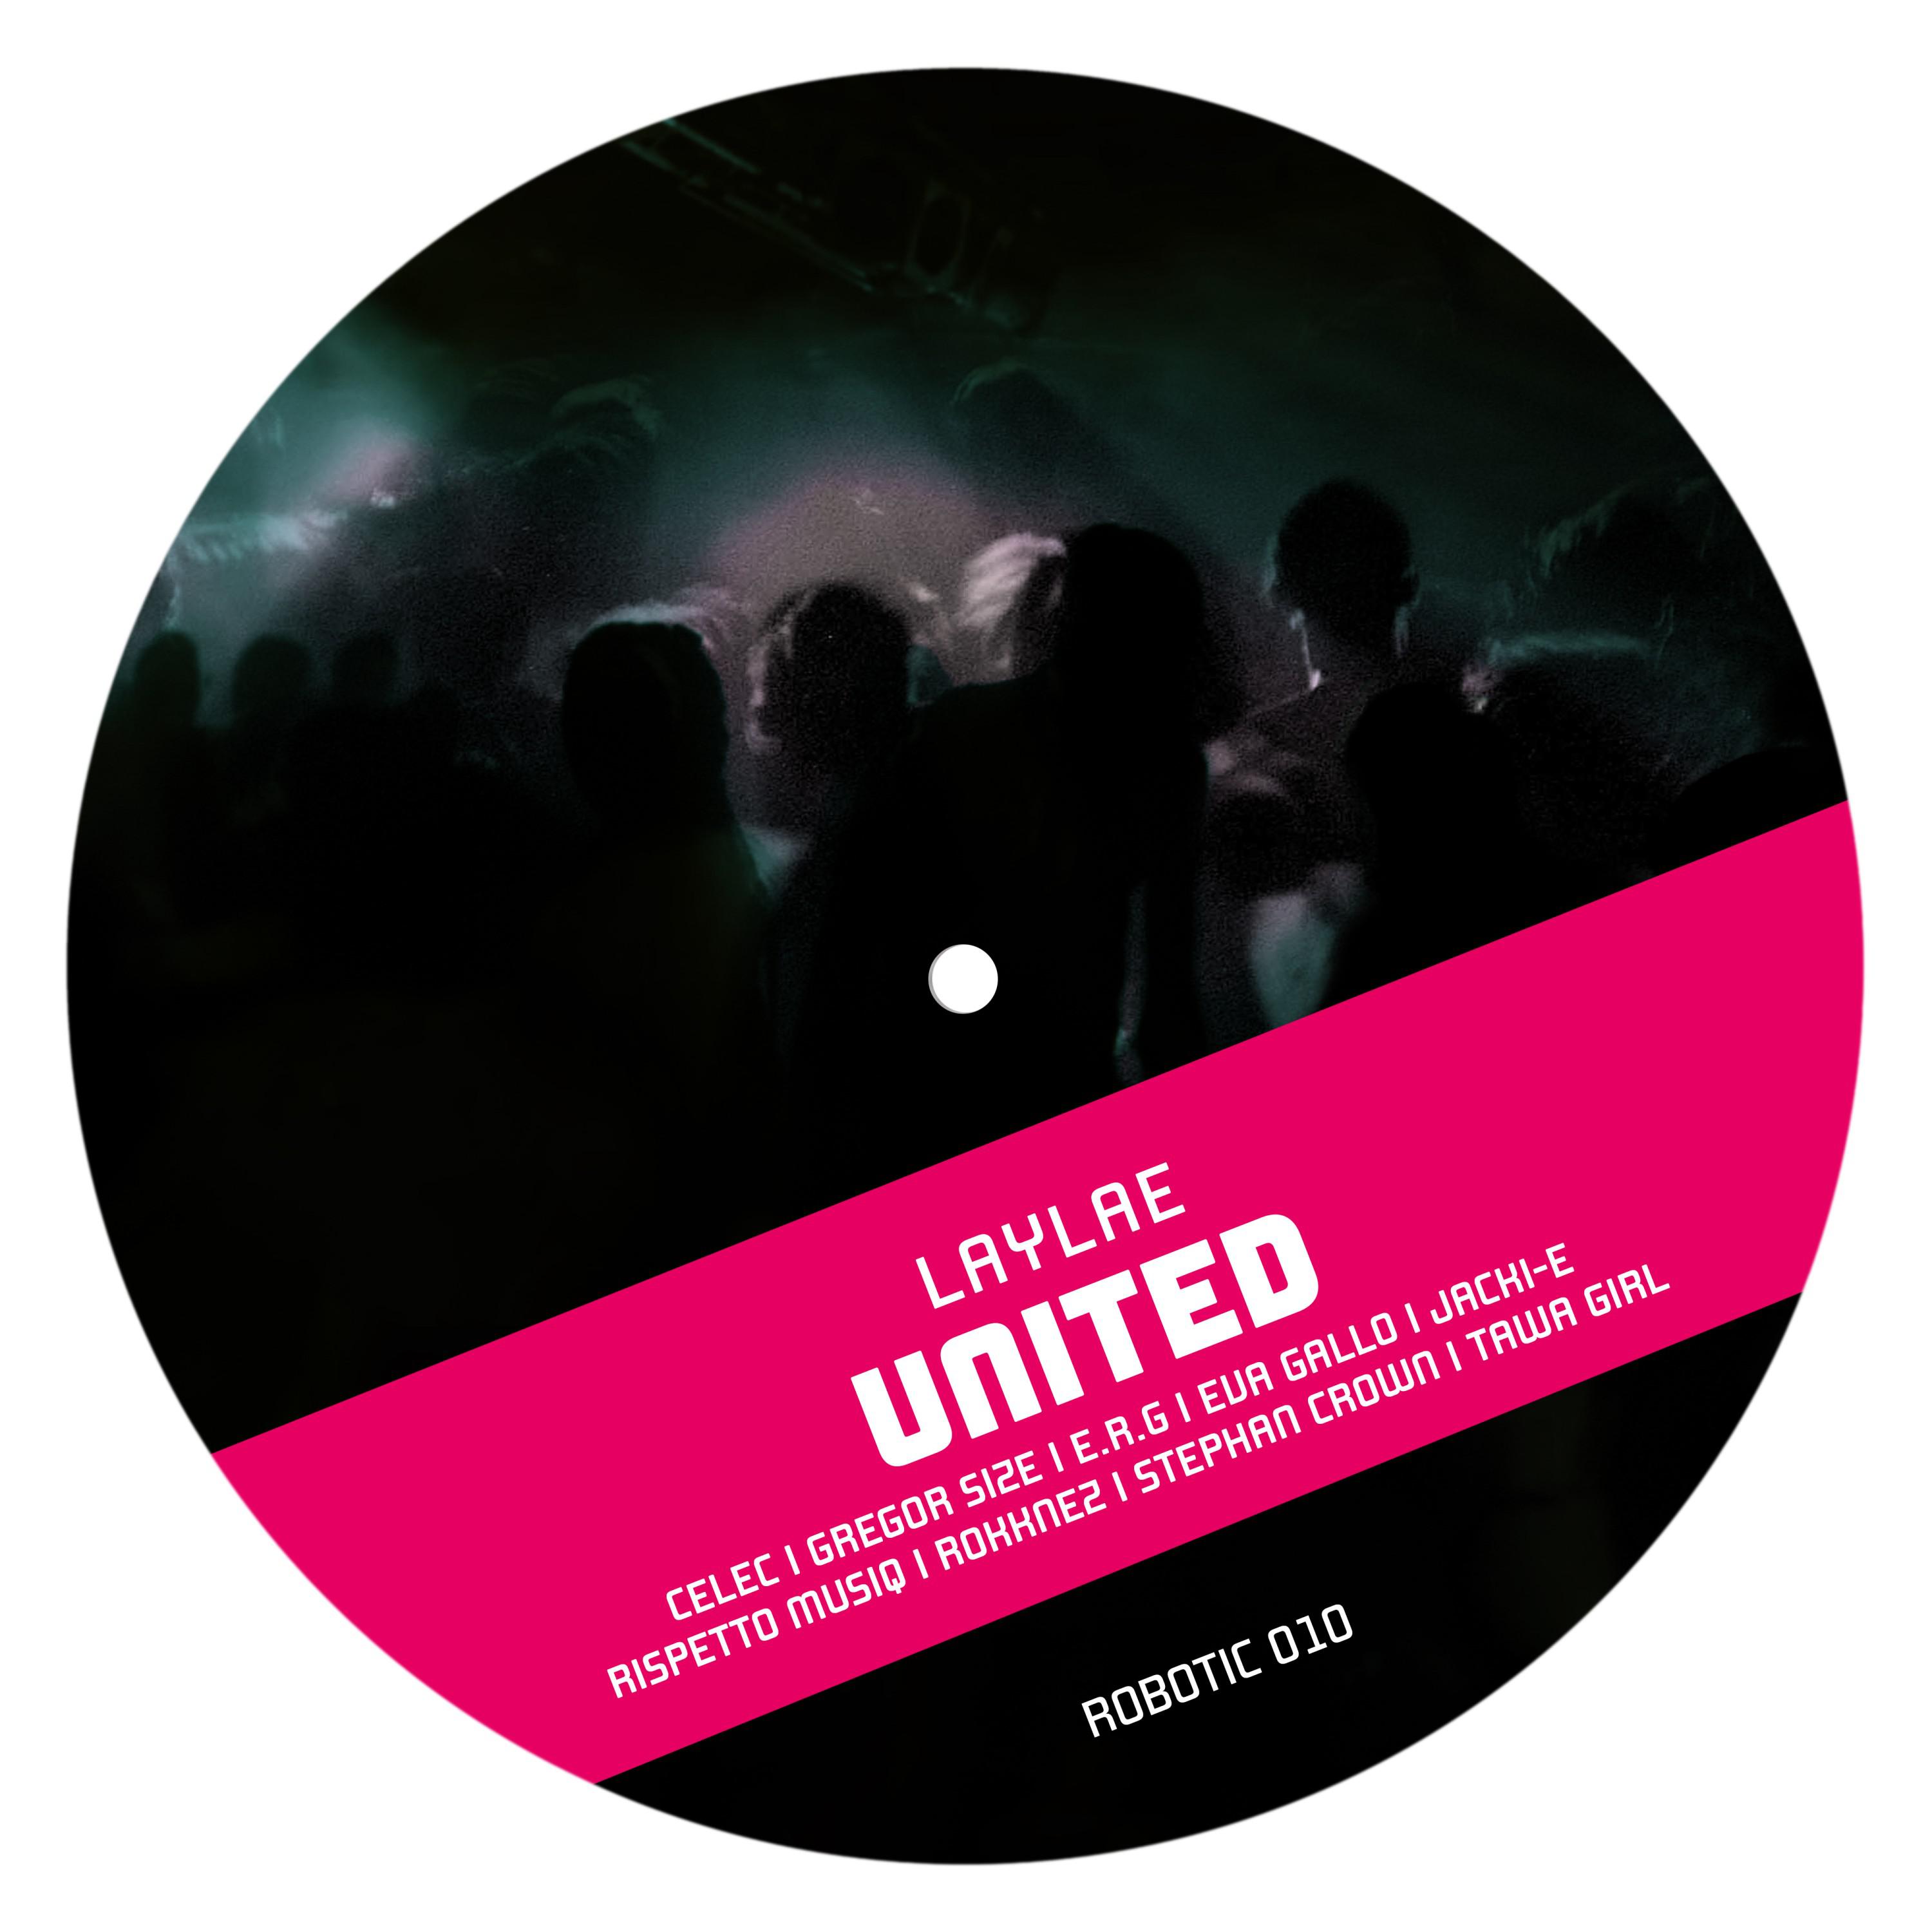 Laylae - United